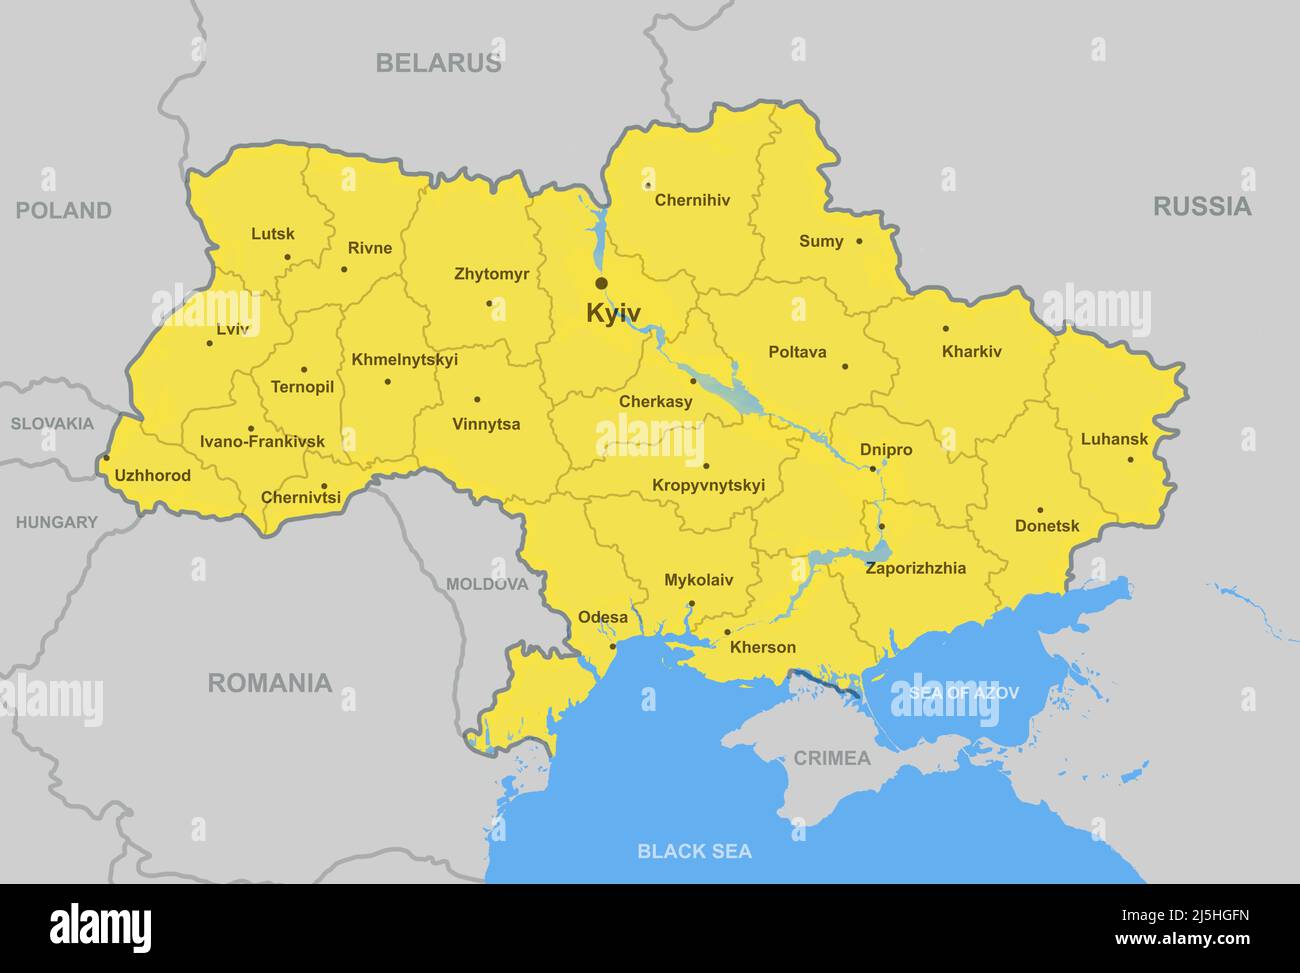 Mappa dell'Ucraina con confini di città e regioni, mappa politica dell'Ucraina con mari neri e azov, Crimea e paesi. Concetto di Ucraina-Rus Foto Stock